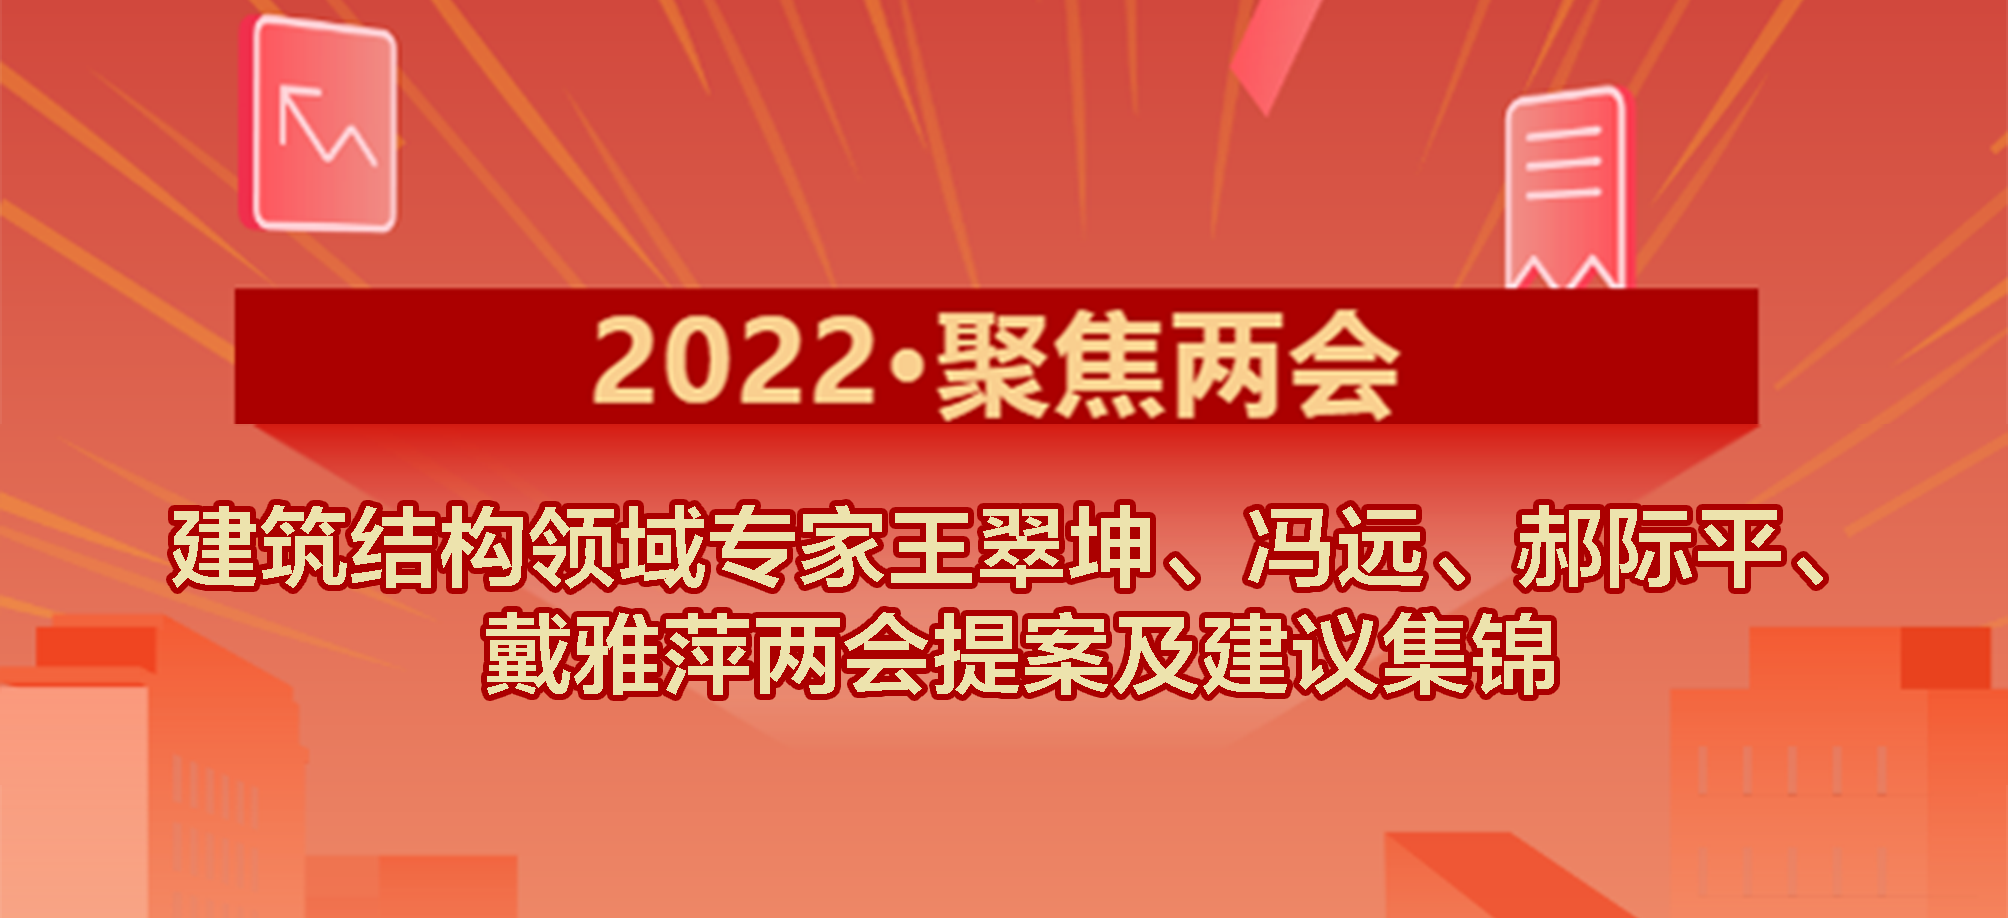 2022·聚焦两会| 建筑结构领域专家冯远、王翠坤、郝际平、戴雅萍两会提案及建议集锦